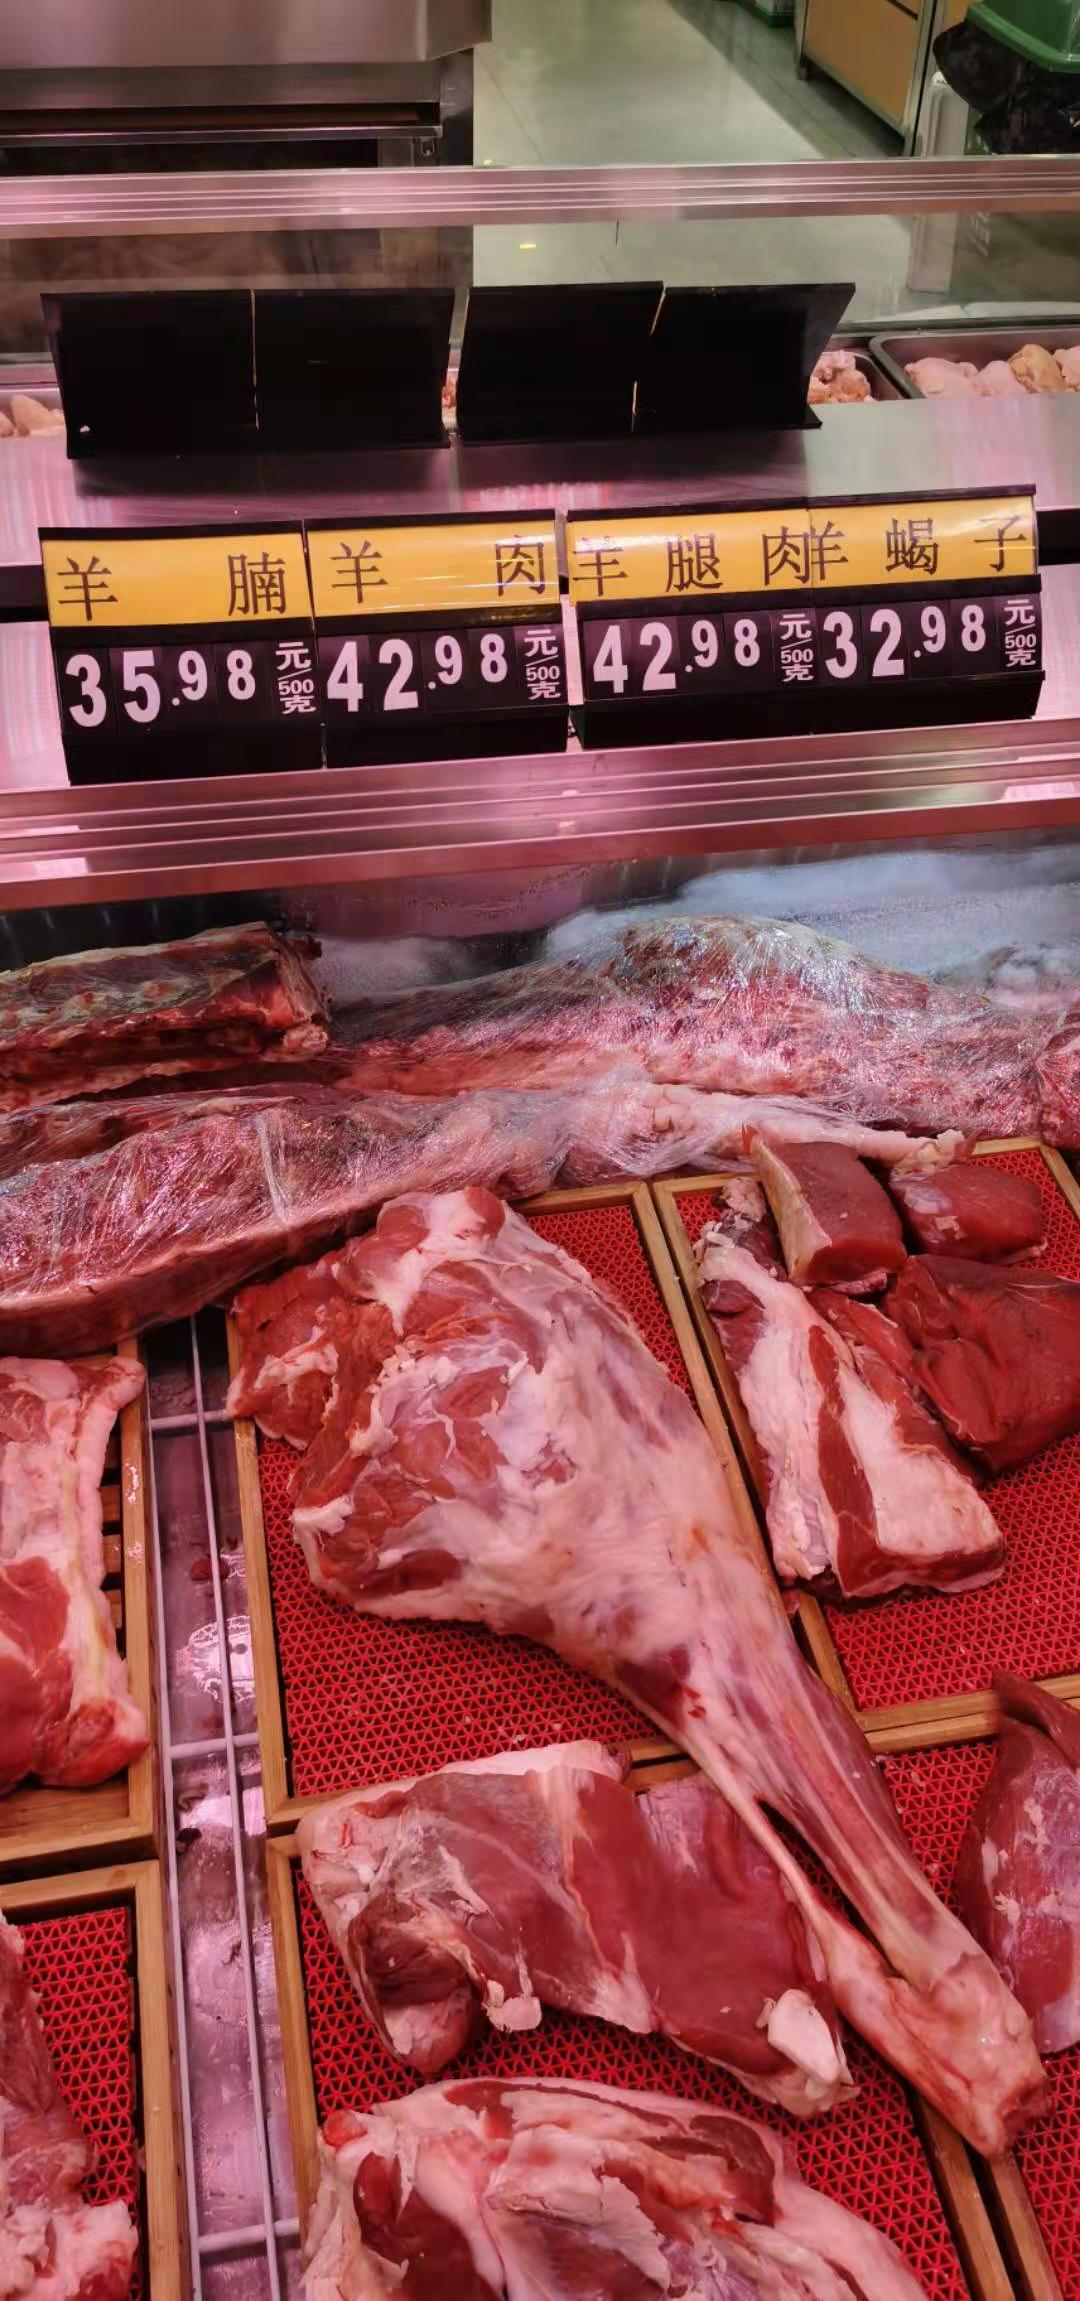 羊肉价格突破80元/公斤 预计春节后会出现小幅回调